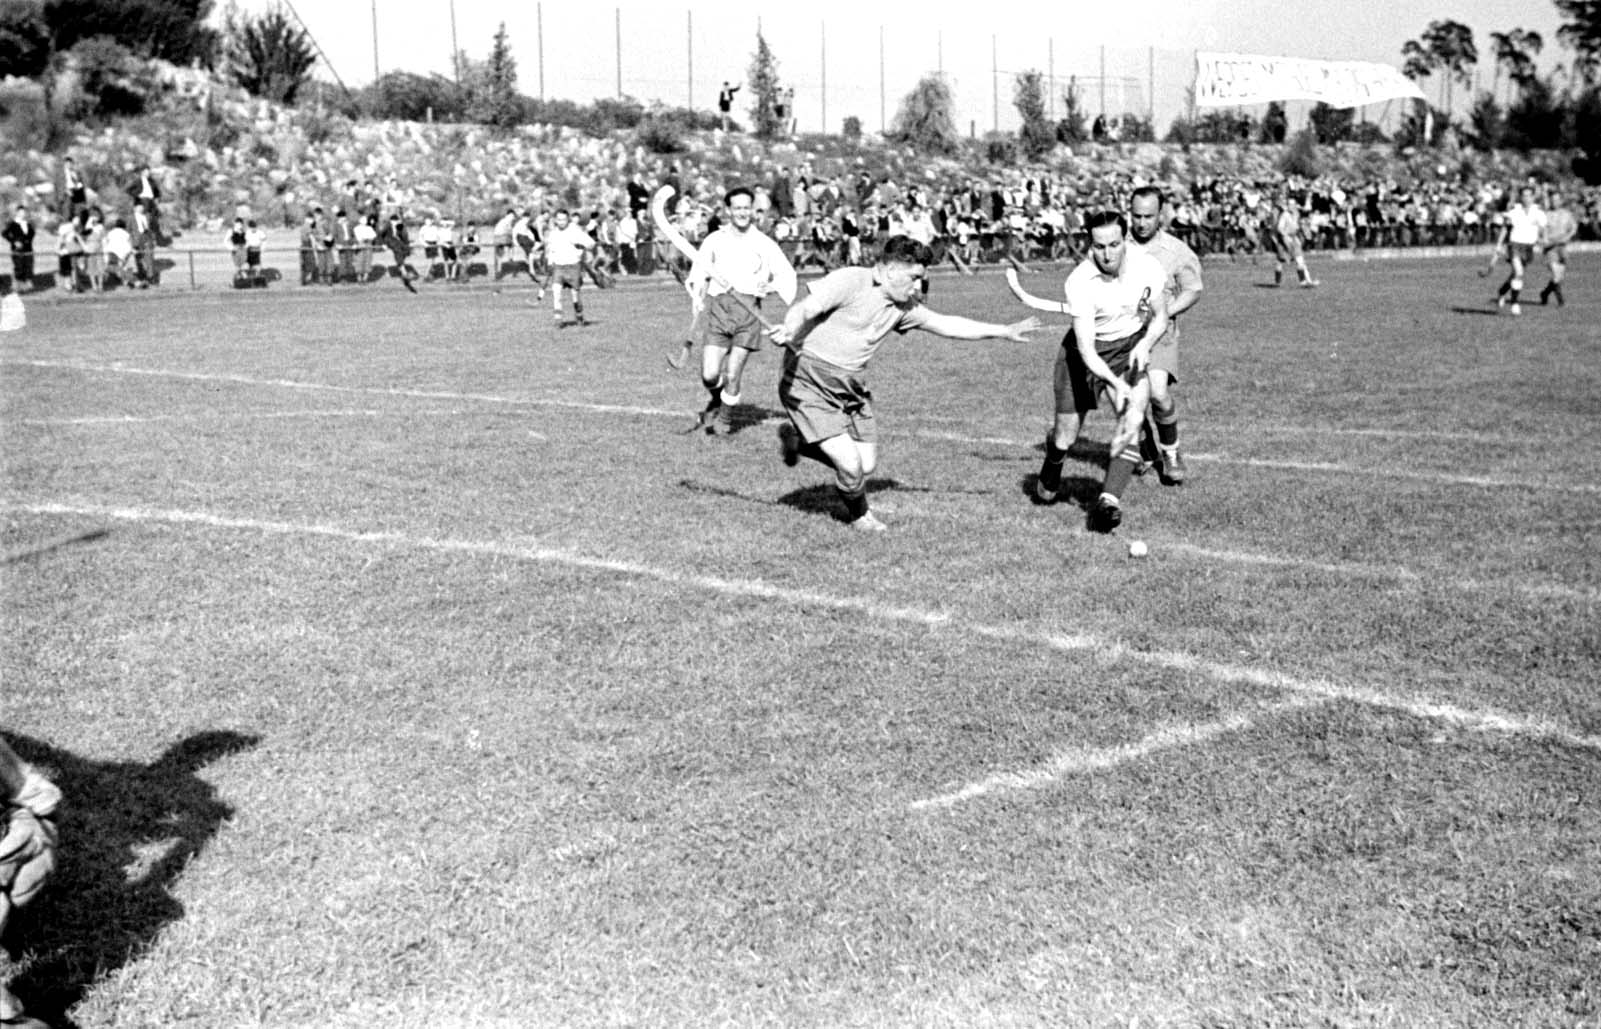 Berlin 1937, Hockeyspiel beim Internationalen Sportfest des „Bar Kochba“, an dem auch „Hakoah Wien“ teilnahm. Das Fest fand auf dem Sportplatz Grunewald statt und umfasste die Disziplinen Fußball, Handball und Hockey